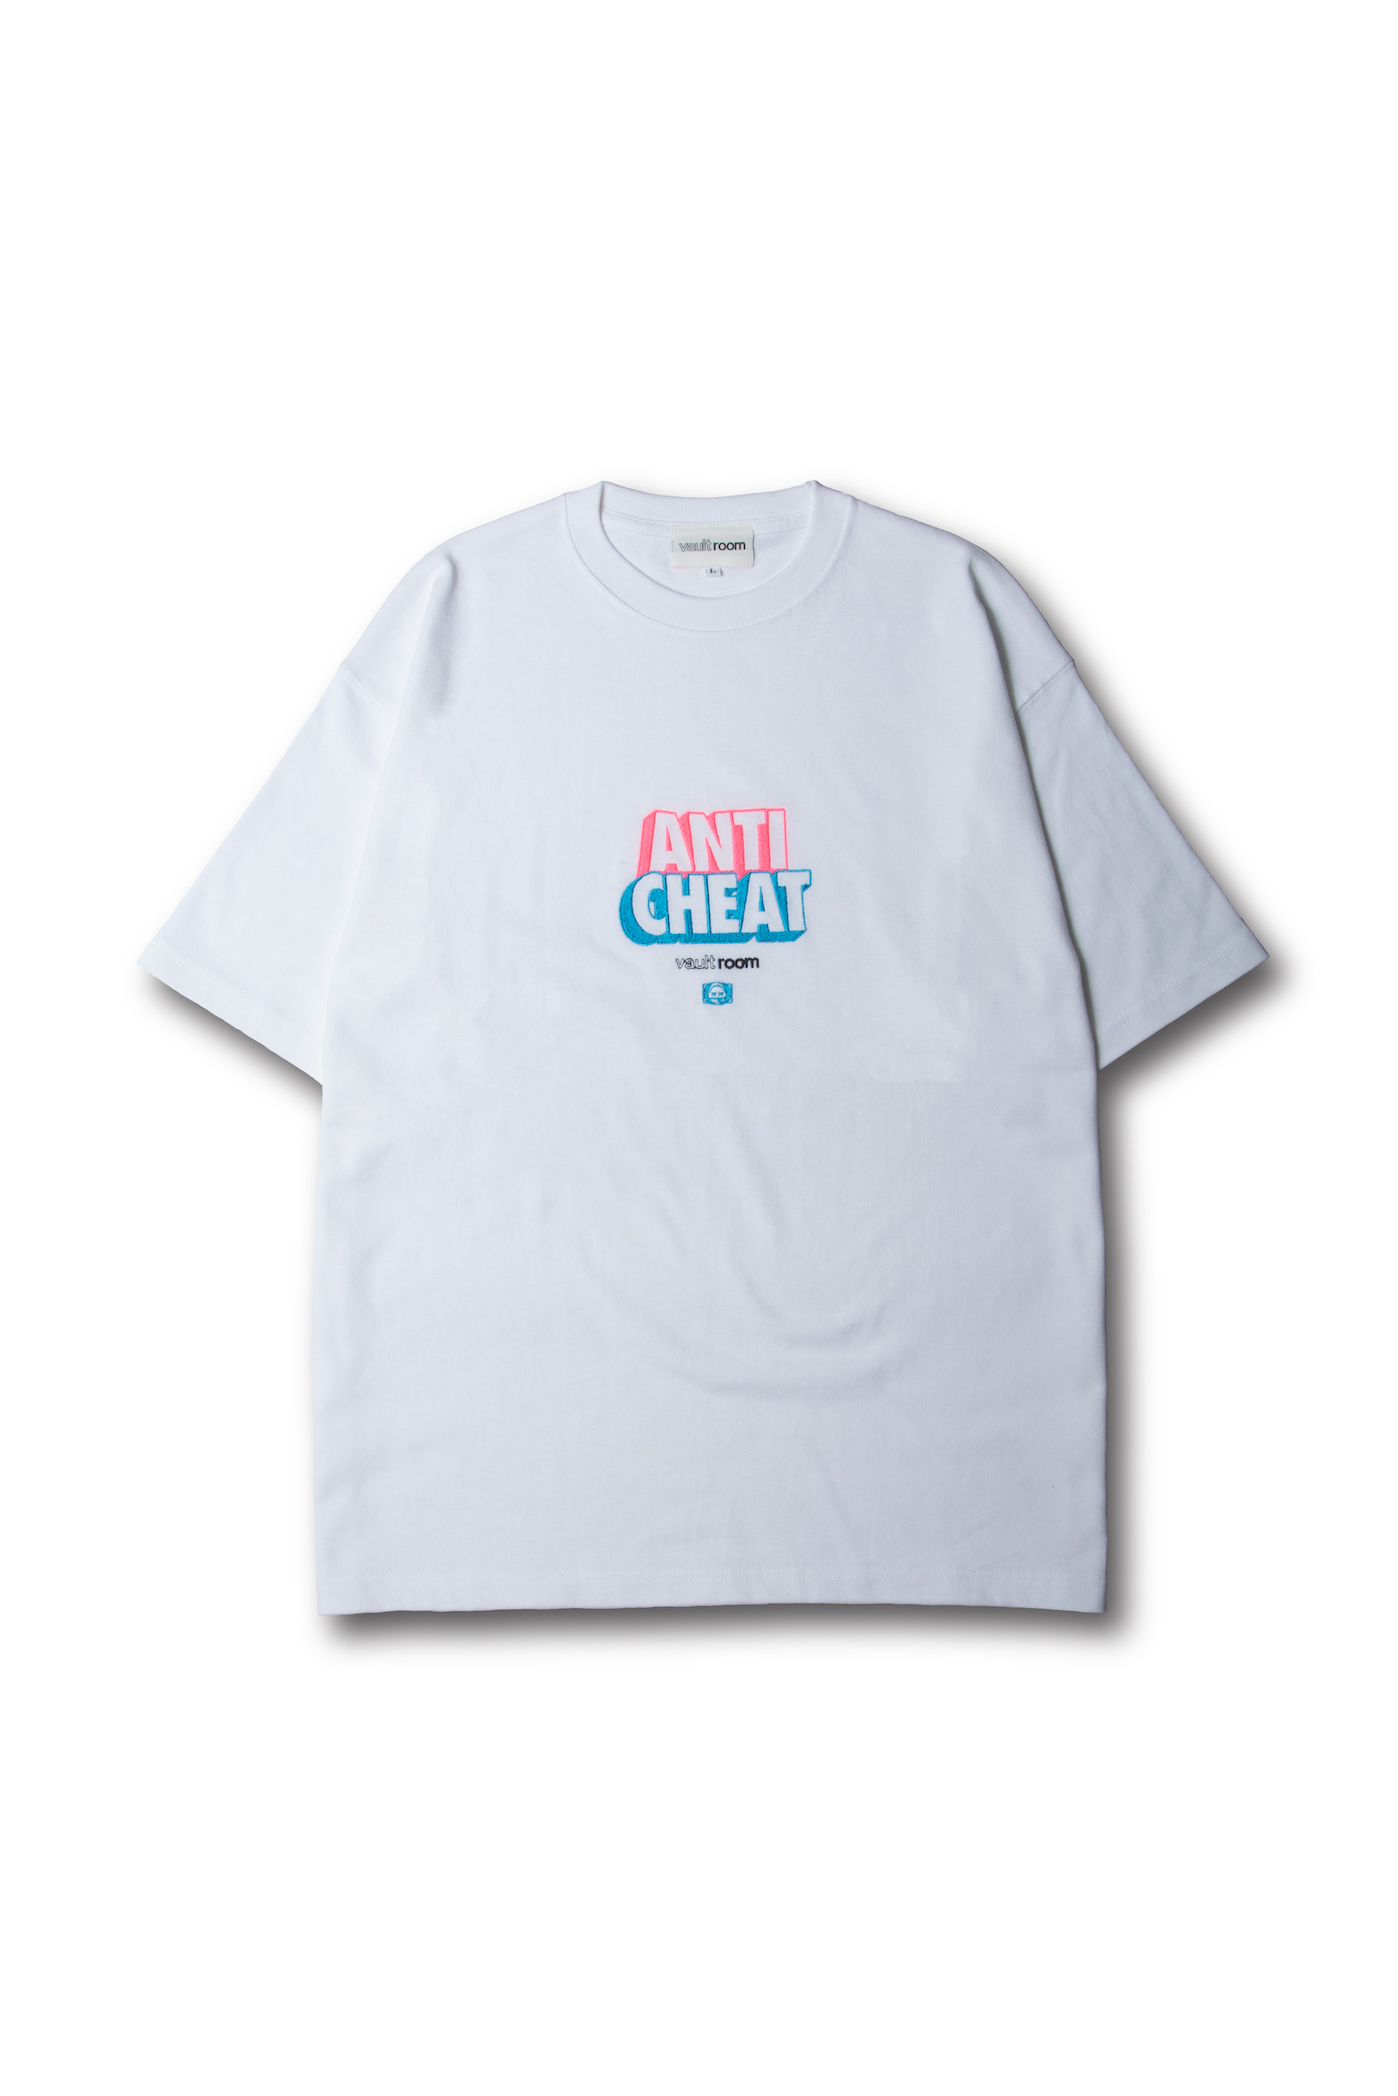 vaultroom Tシャツ - Tシャツ/カットソー(半袖/袖なし)